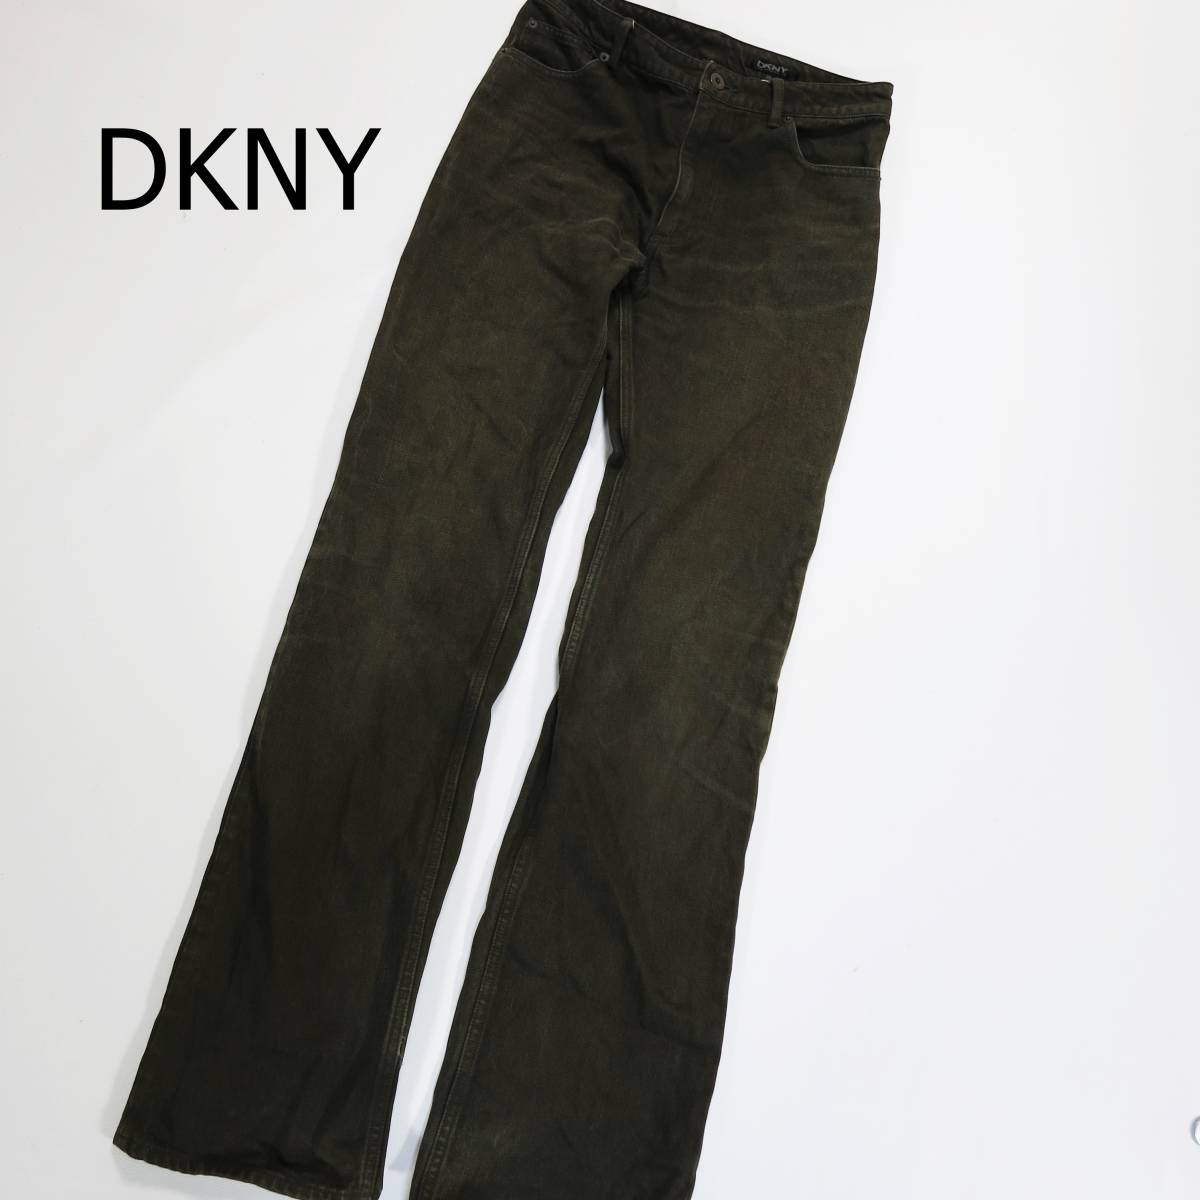 DKNY ダナキャランニューヨーク カジュアルパンツ 28インチ S 90%OFF カーキ 最大87%OFFクーポン 深緑 ミリタリー ストレート シンプル 長ズボン インディゴ染め